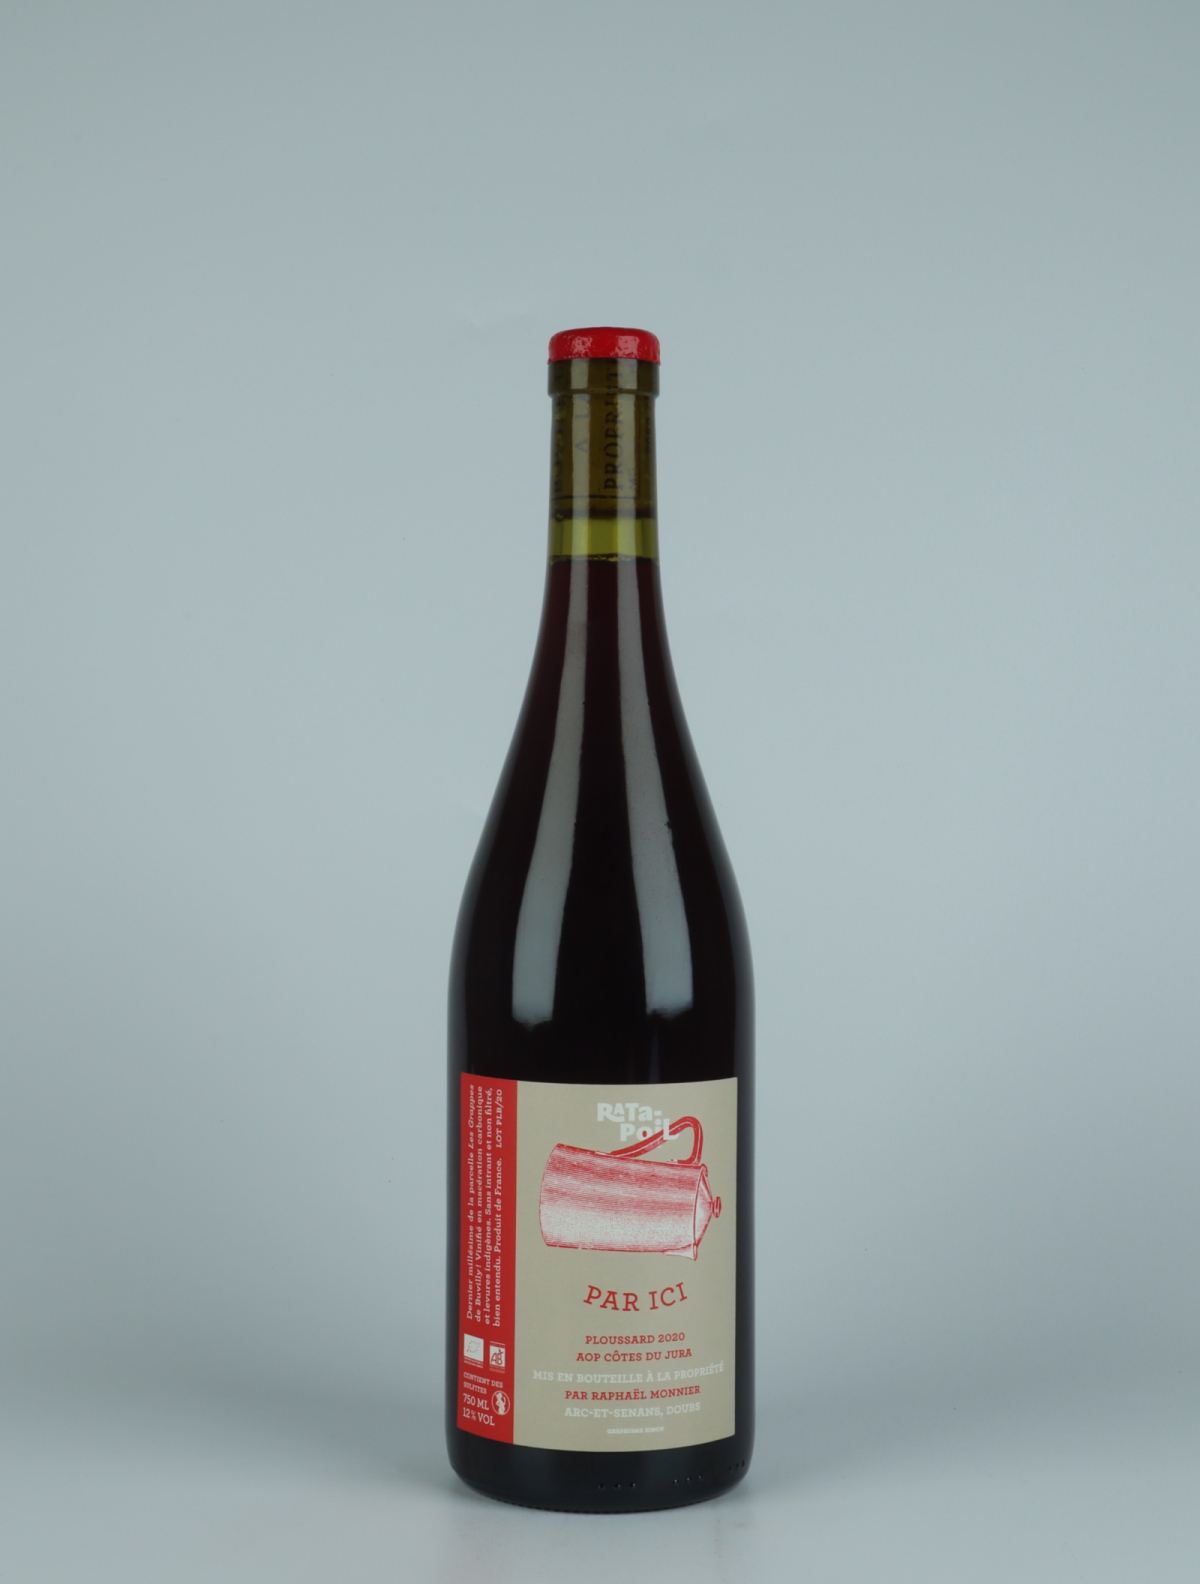 En flaske 2020 Par Ici - Ploussard Rødvin fra Domaine Ratapoil, Jura i Frankrig